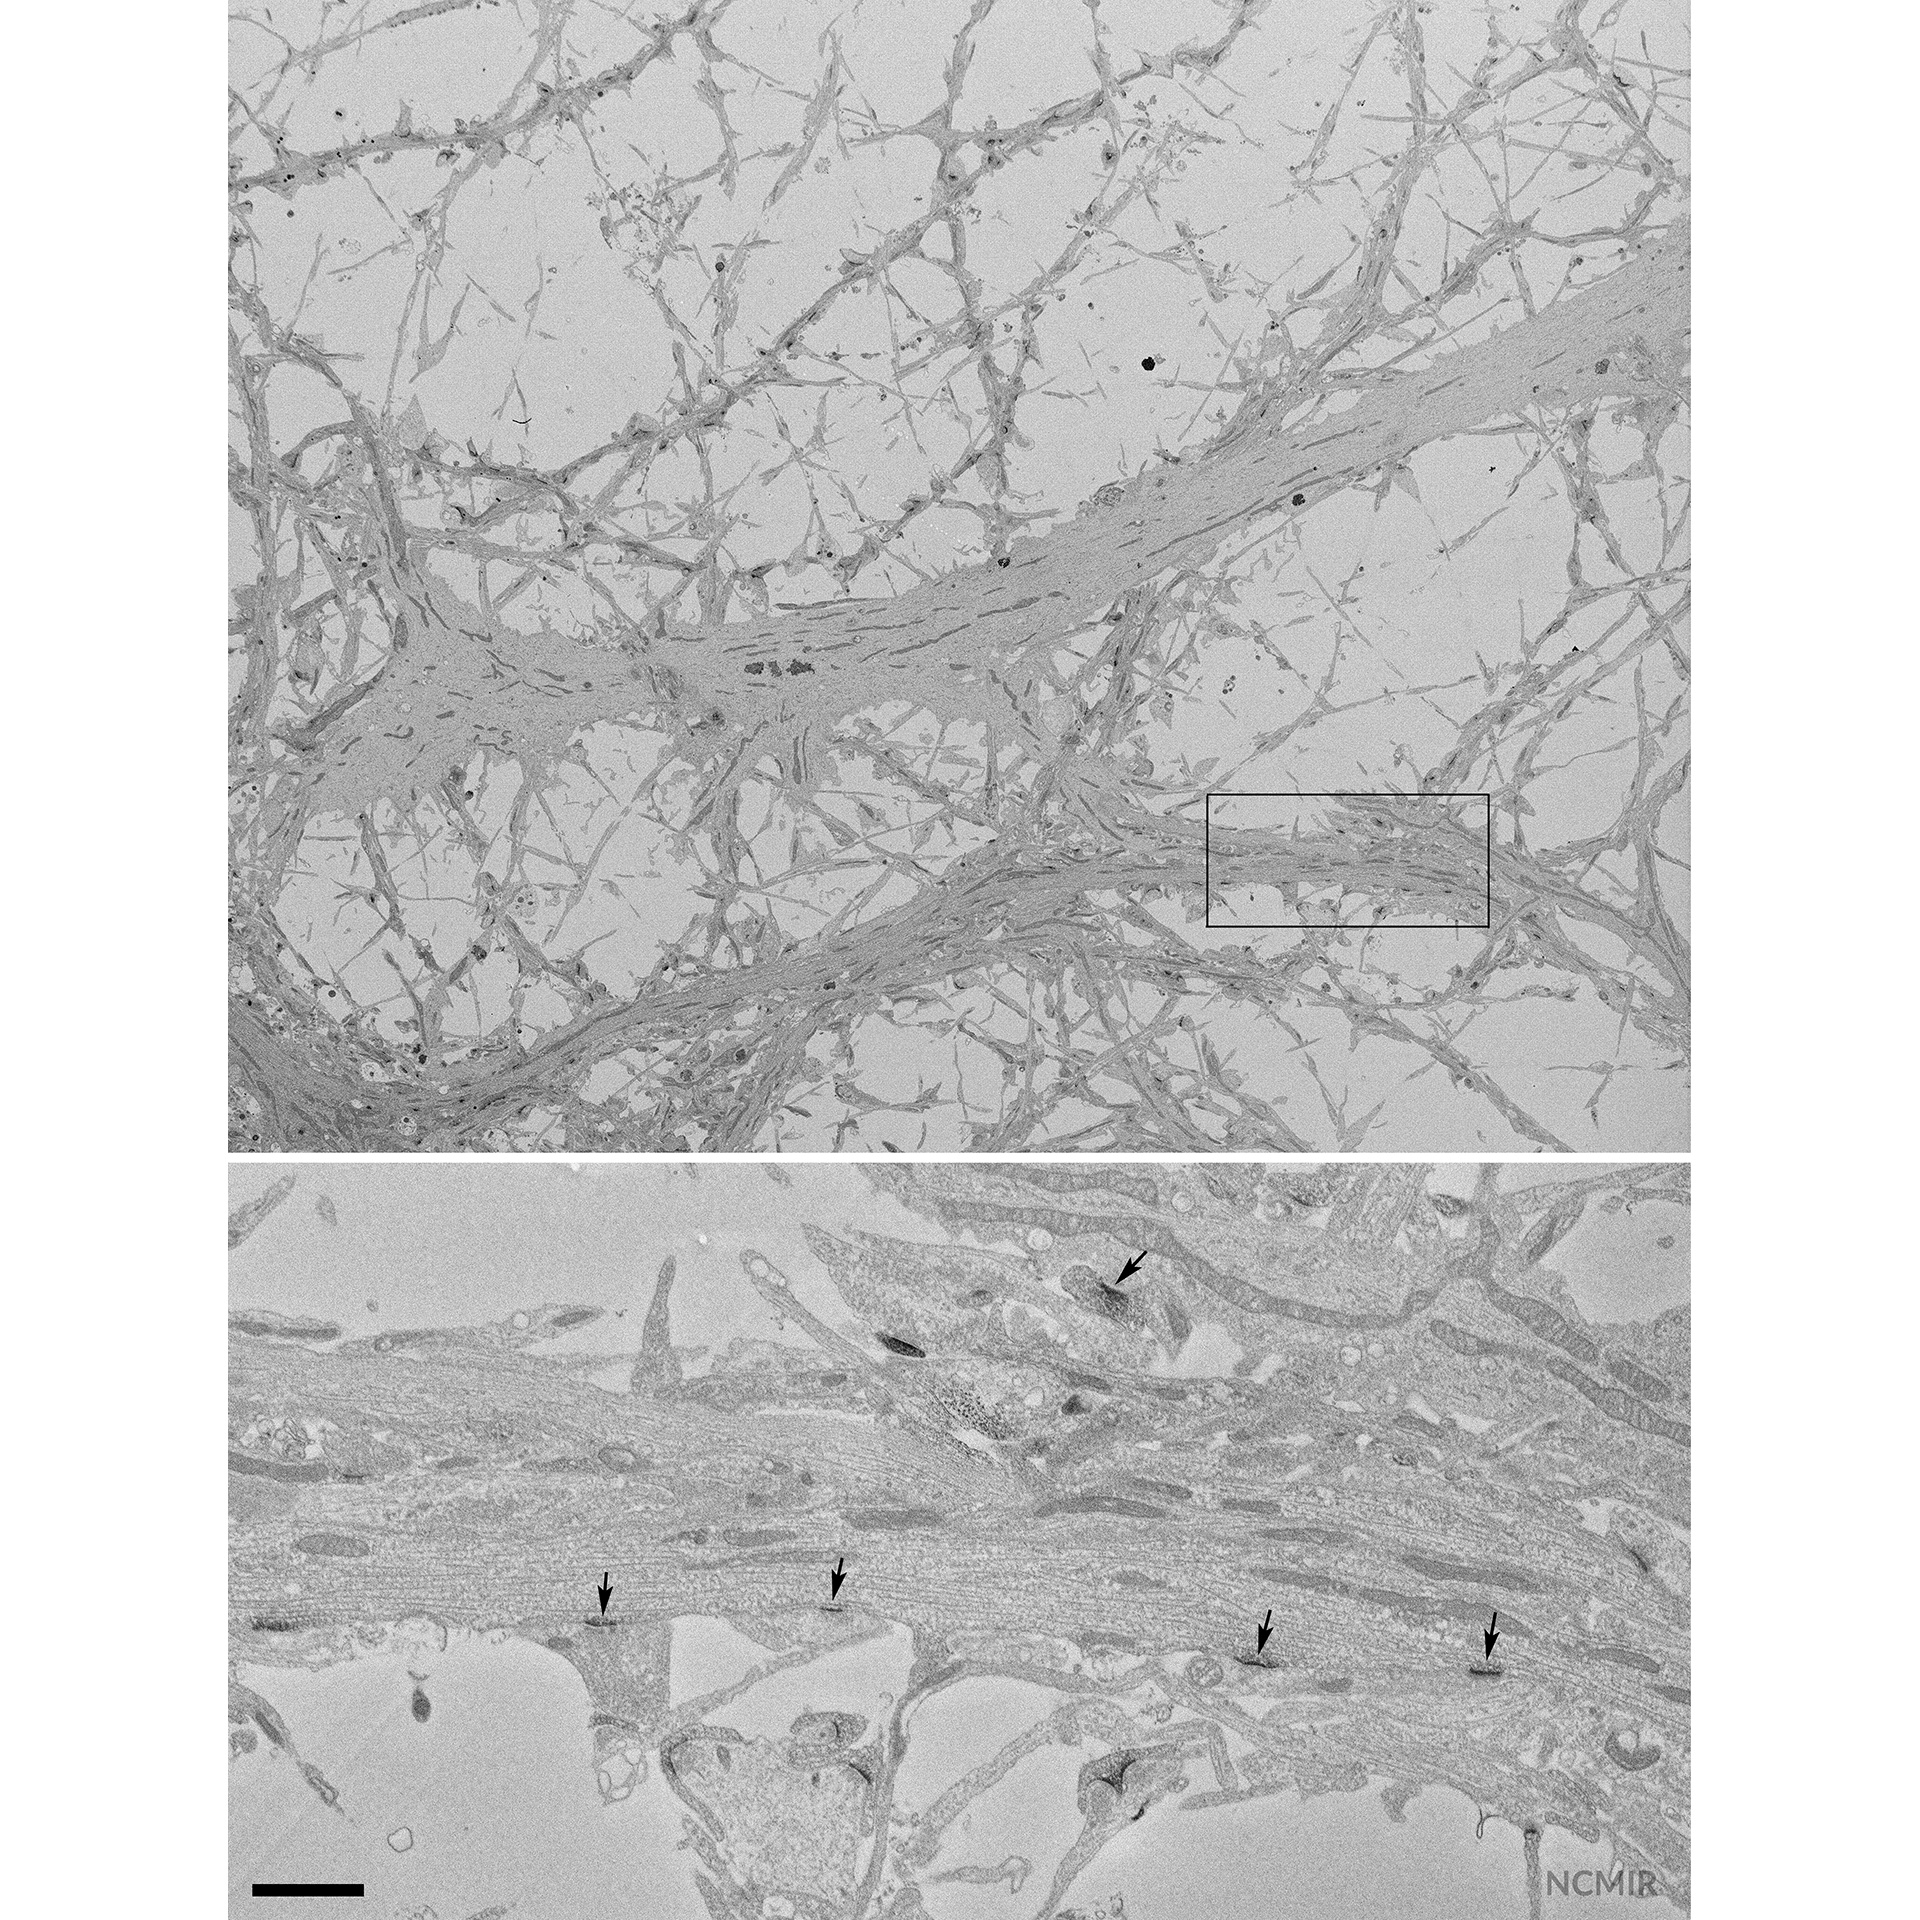 Cerebro de ratón (cultivo de neuronas del hipocampo que expresan PSD95-APEX2 para teñir las densidades postsinápticas)